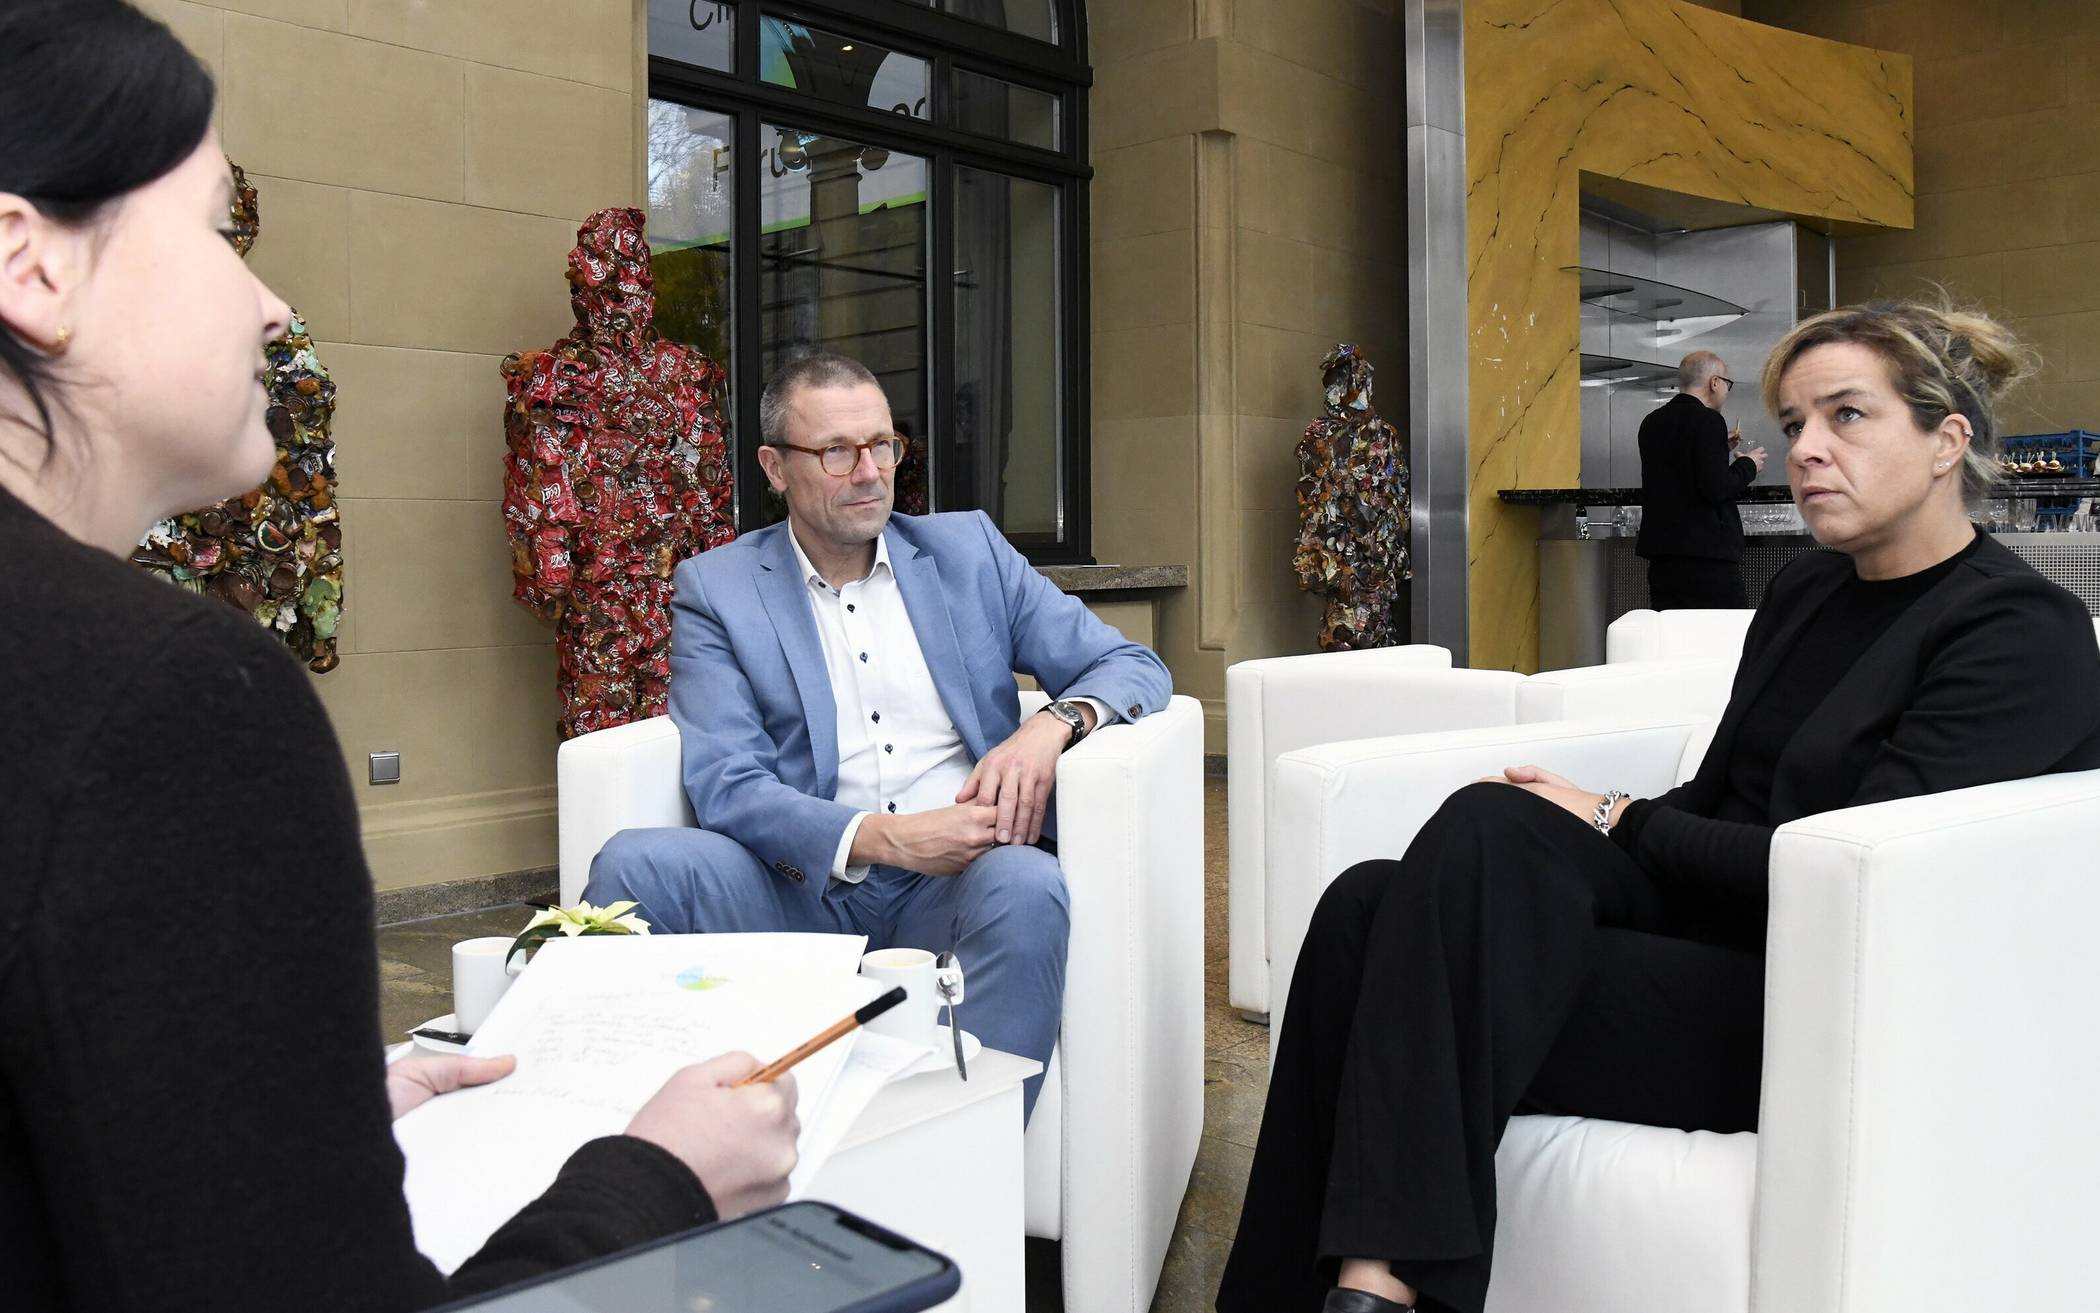  Rundschau-Redakteurin Nina Bossy (li.) im Gespräch mit Ministerin Mona Neubaur und Oberbürgermeister Uwe Schneidewind.  